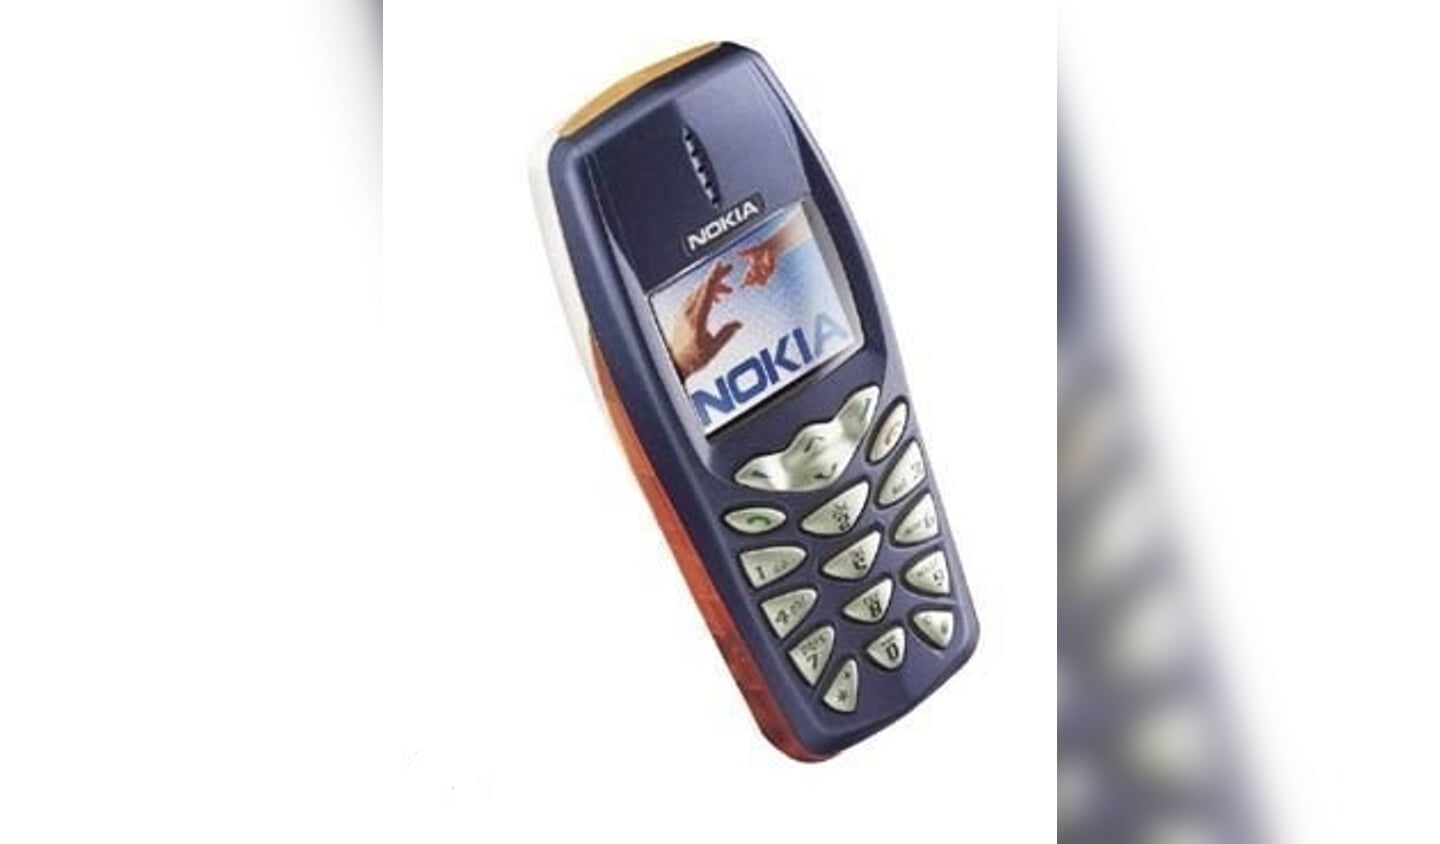 Een vergelijkbaar model van de gezochte Nokia-telefoon (Foto: politie)